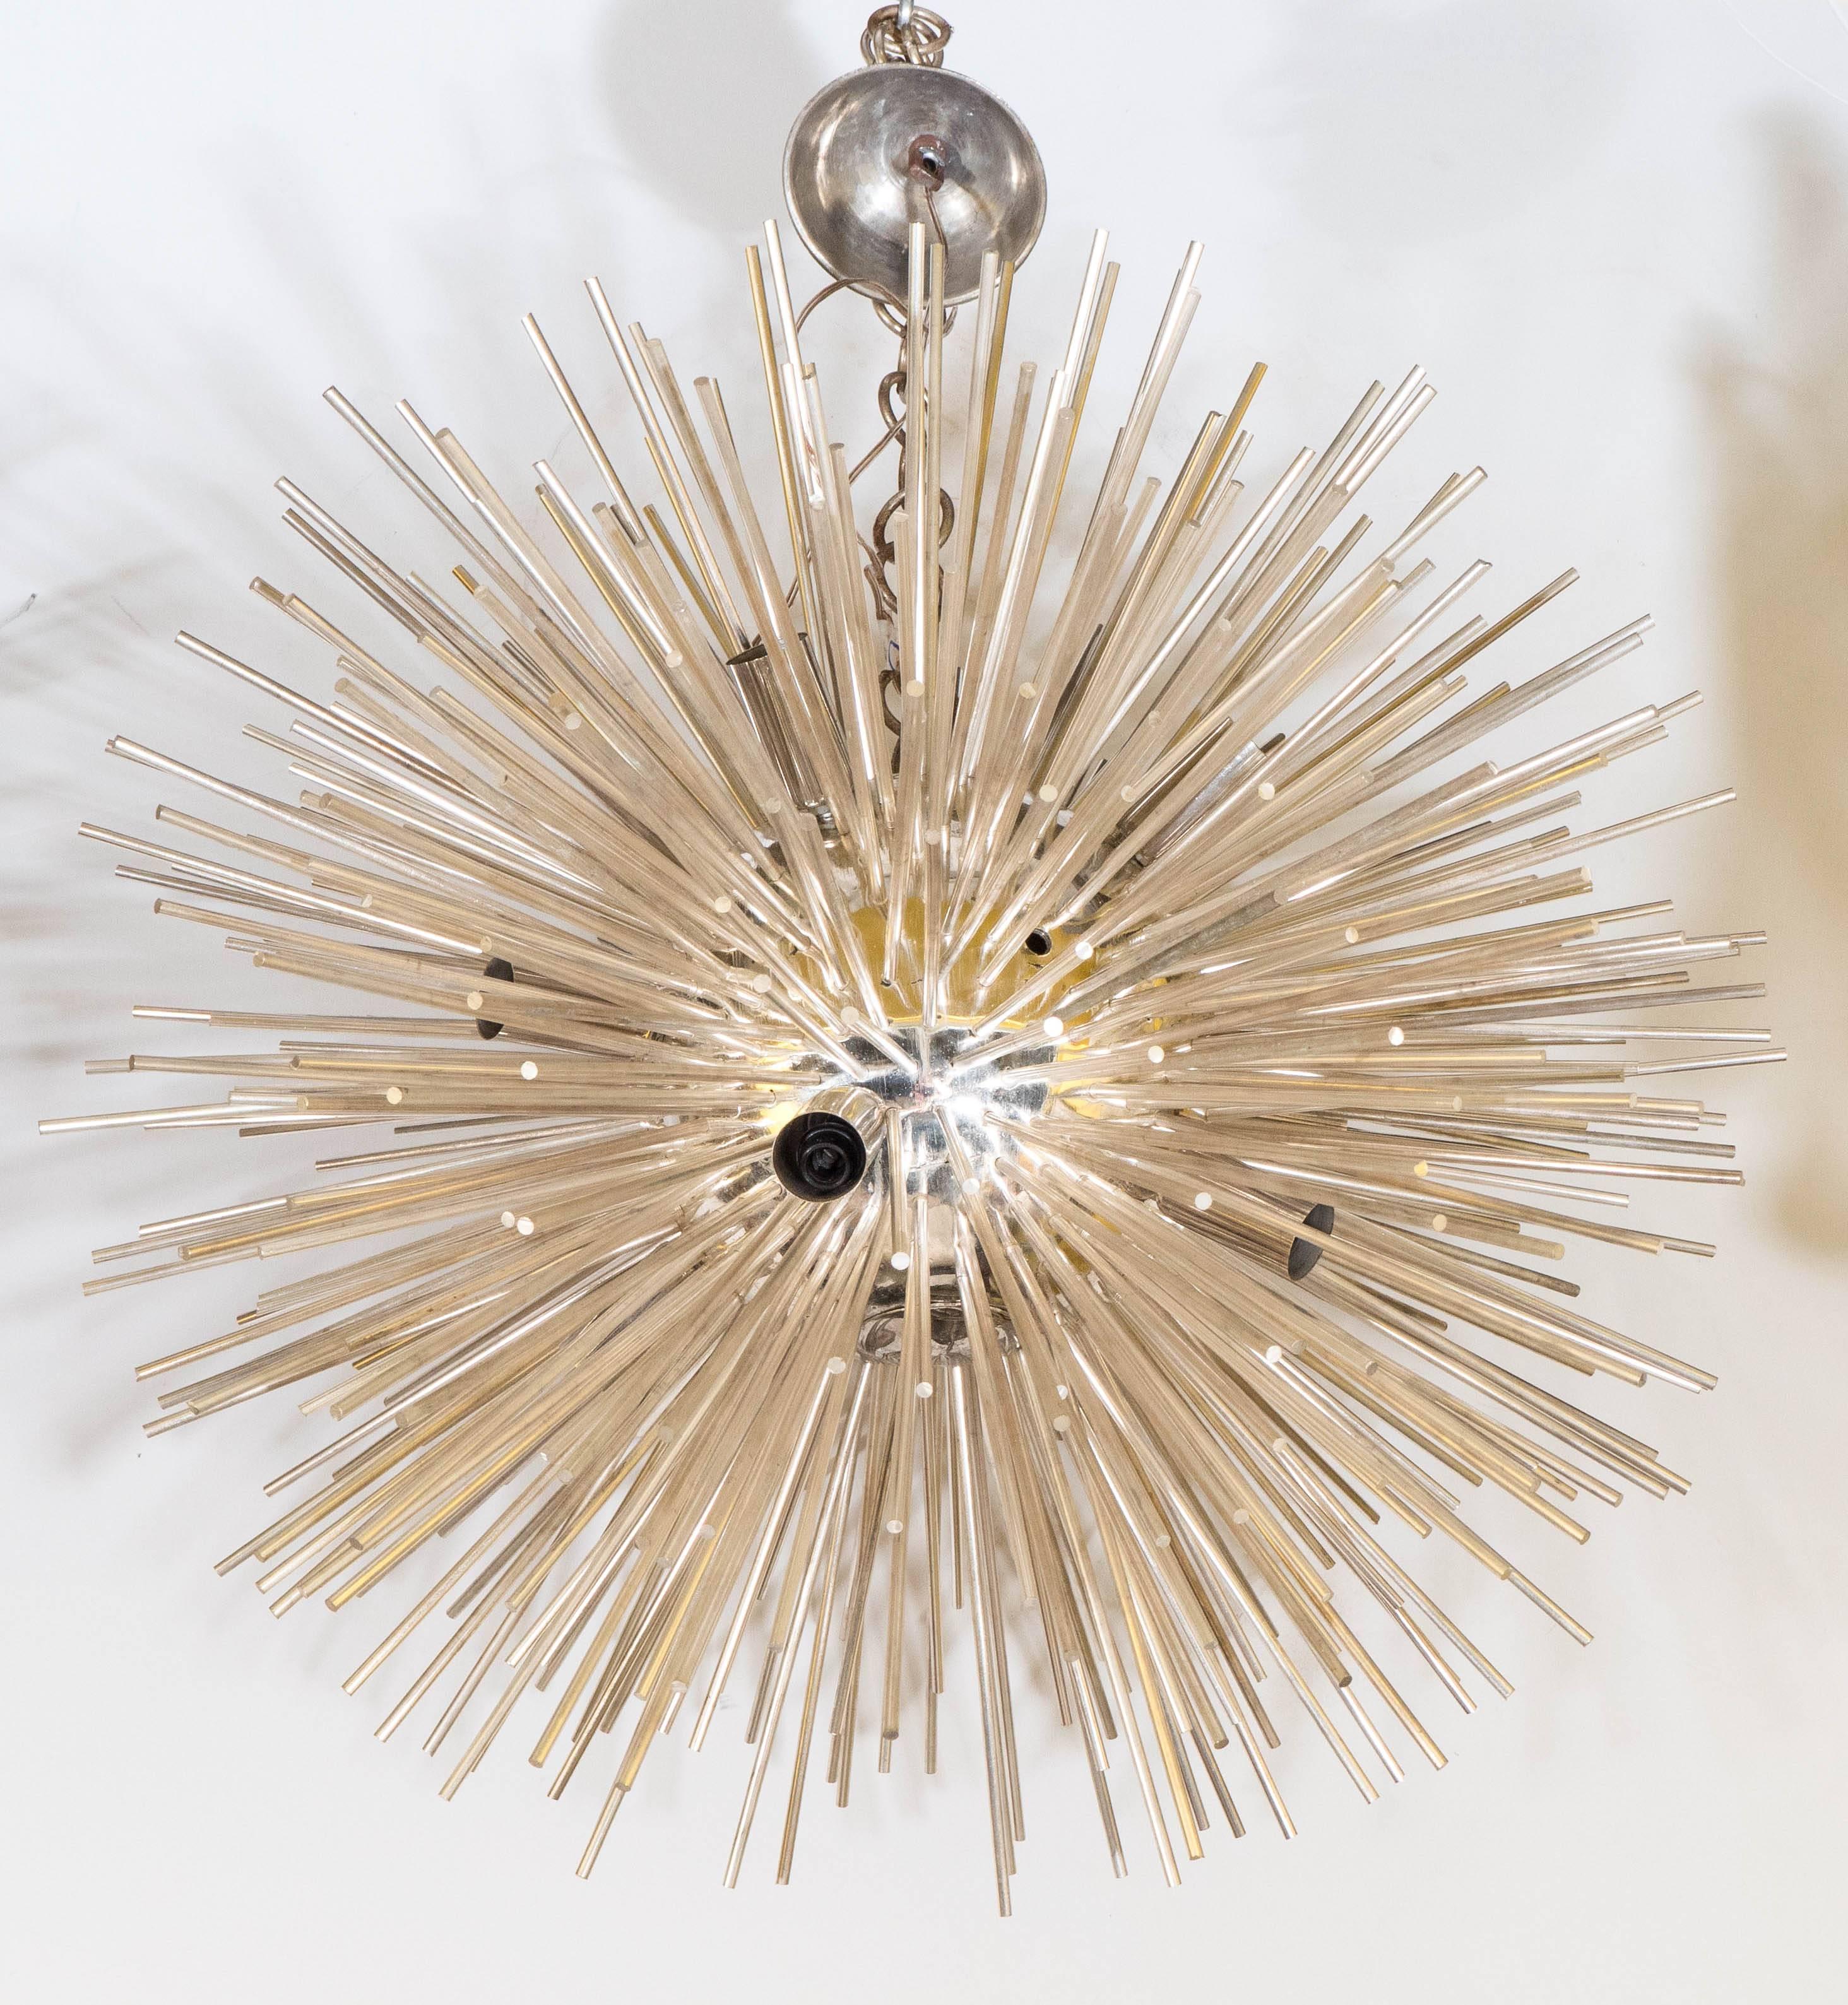 Ce lustre Sputnik italien très moderniste comprend d'étonnantes tiges argentées qui rayonnent à partir d'un noyau central, suspendu à une plaque de plafond circulaire. Très bon état, toute usure présente correspondant à l'âge et à l'utilisation ;